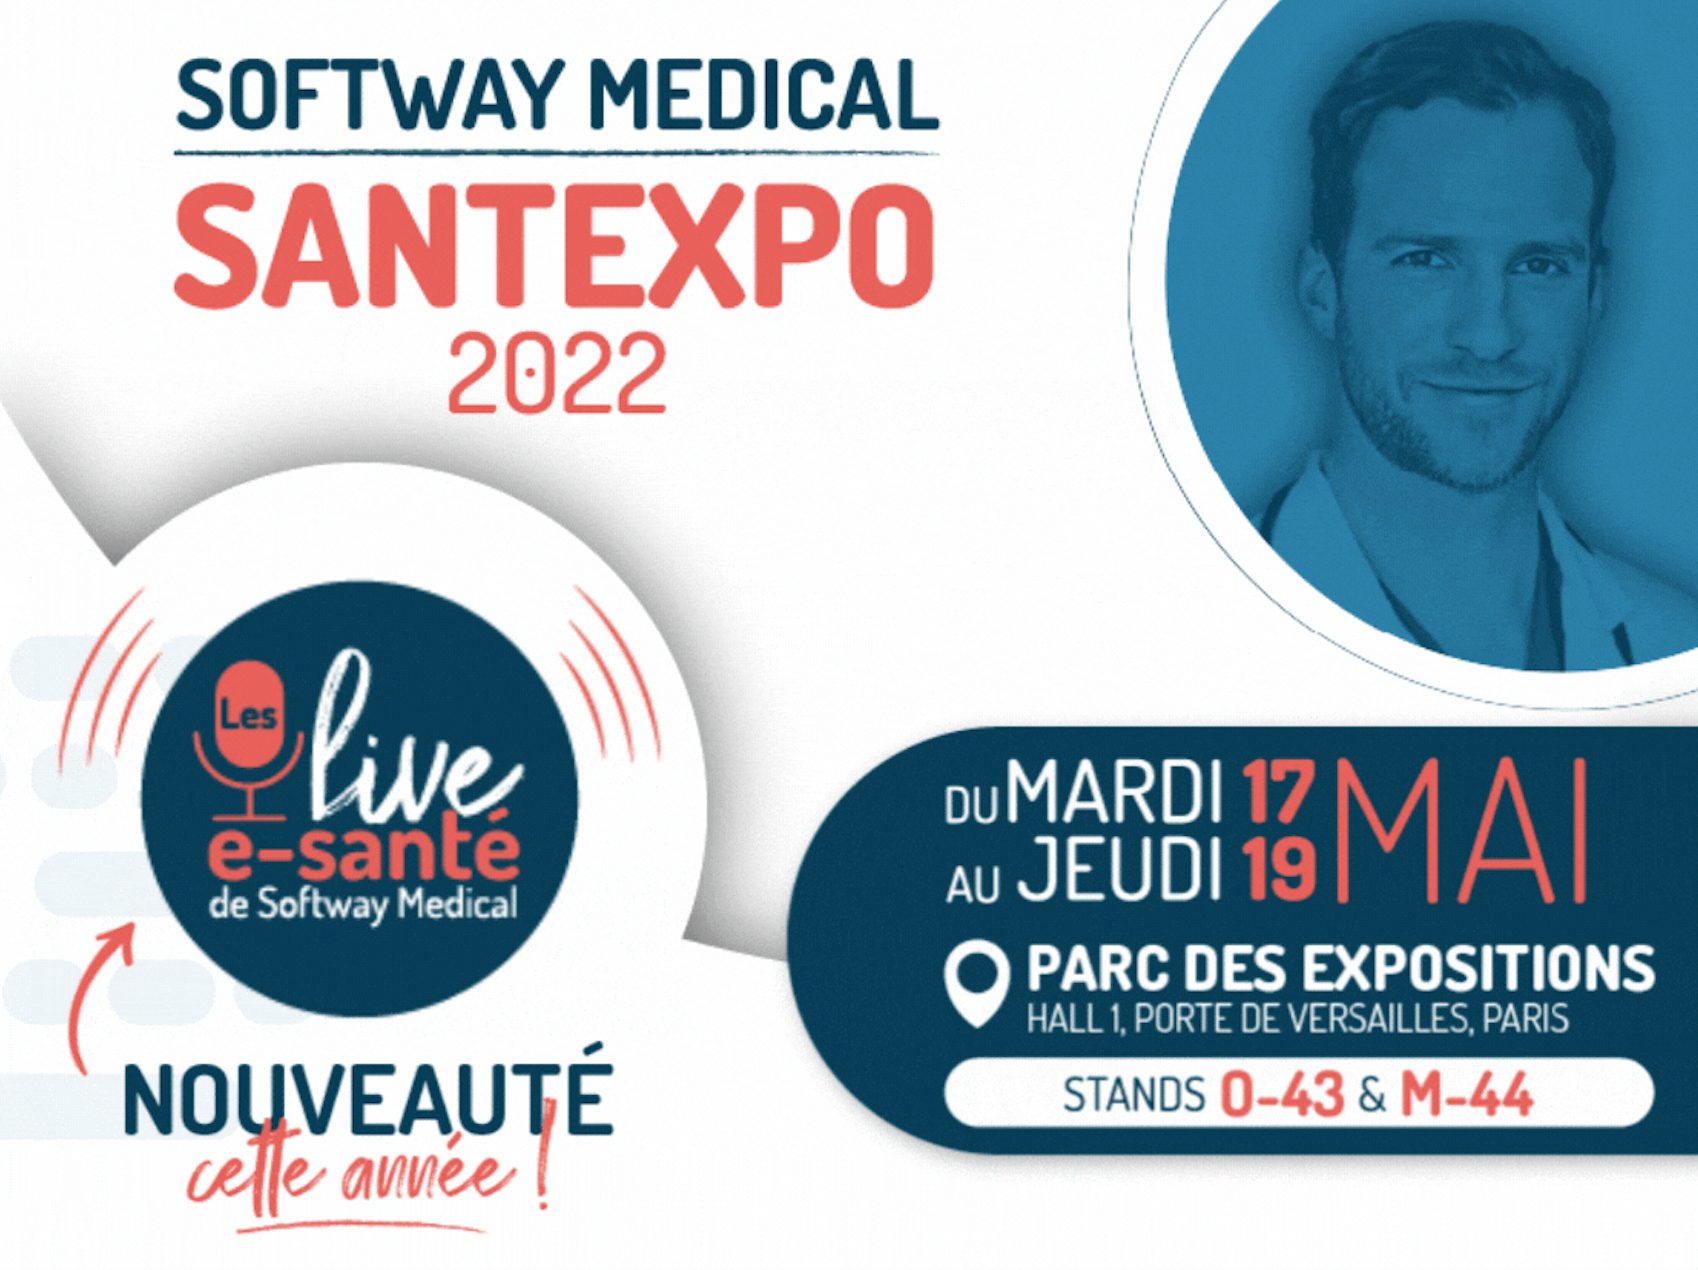 SantExpo : le Groupe Softway Medical, leader français des Systèmes d’Information en Santé, vous donne rendez-vous pour ses "live e-sante"